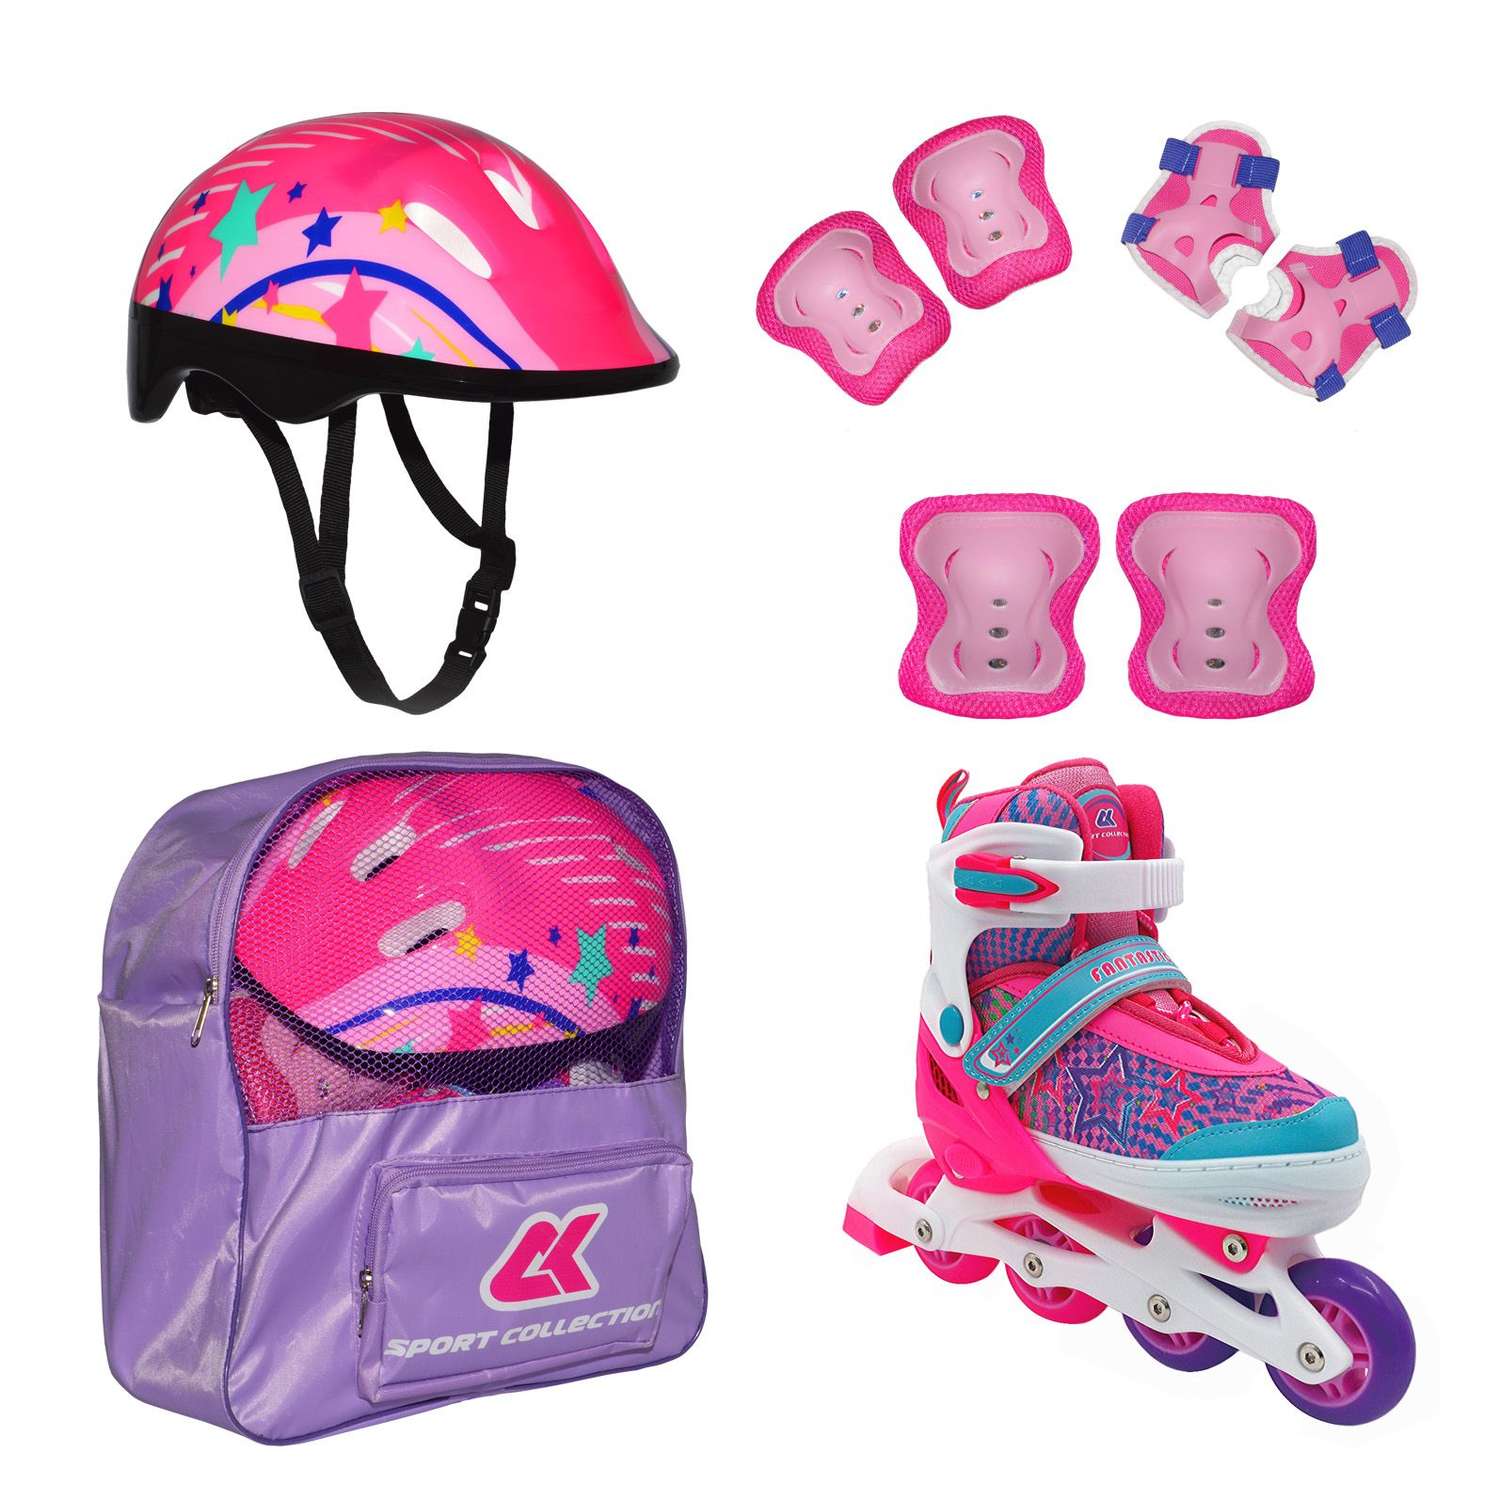 Набор роликовые коньки Sport Collection раздвижные Set Fantastic Pink шлем и набор защиты в сумке размер M 33-36 - фото 1